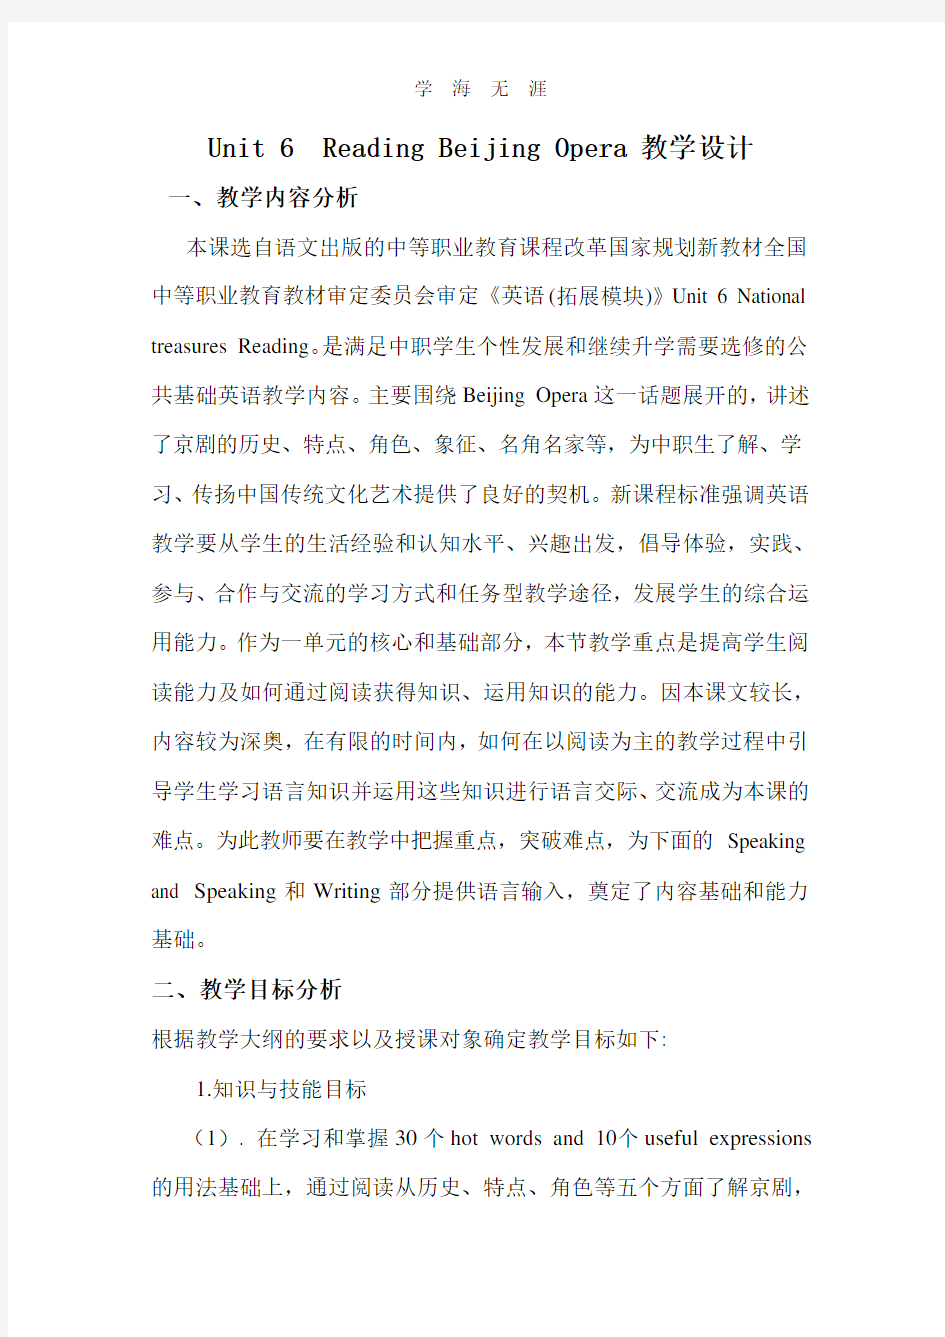 语文版中职英语(拓展模块)Unit 6《Chinese Heritage》word教案.pdf